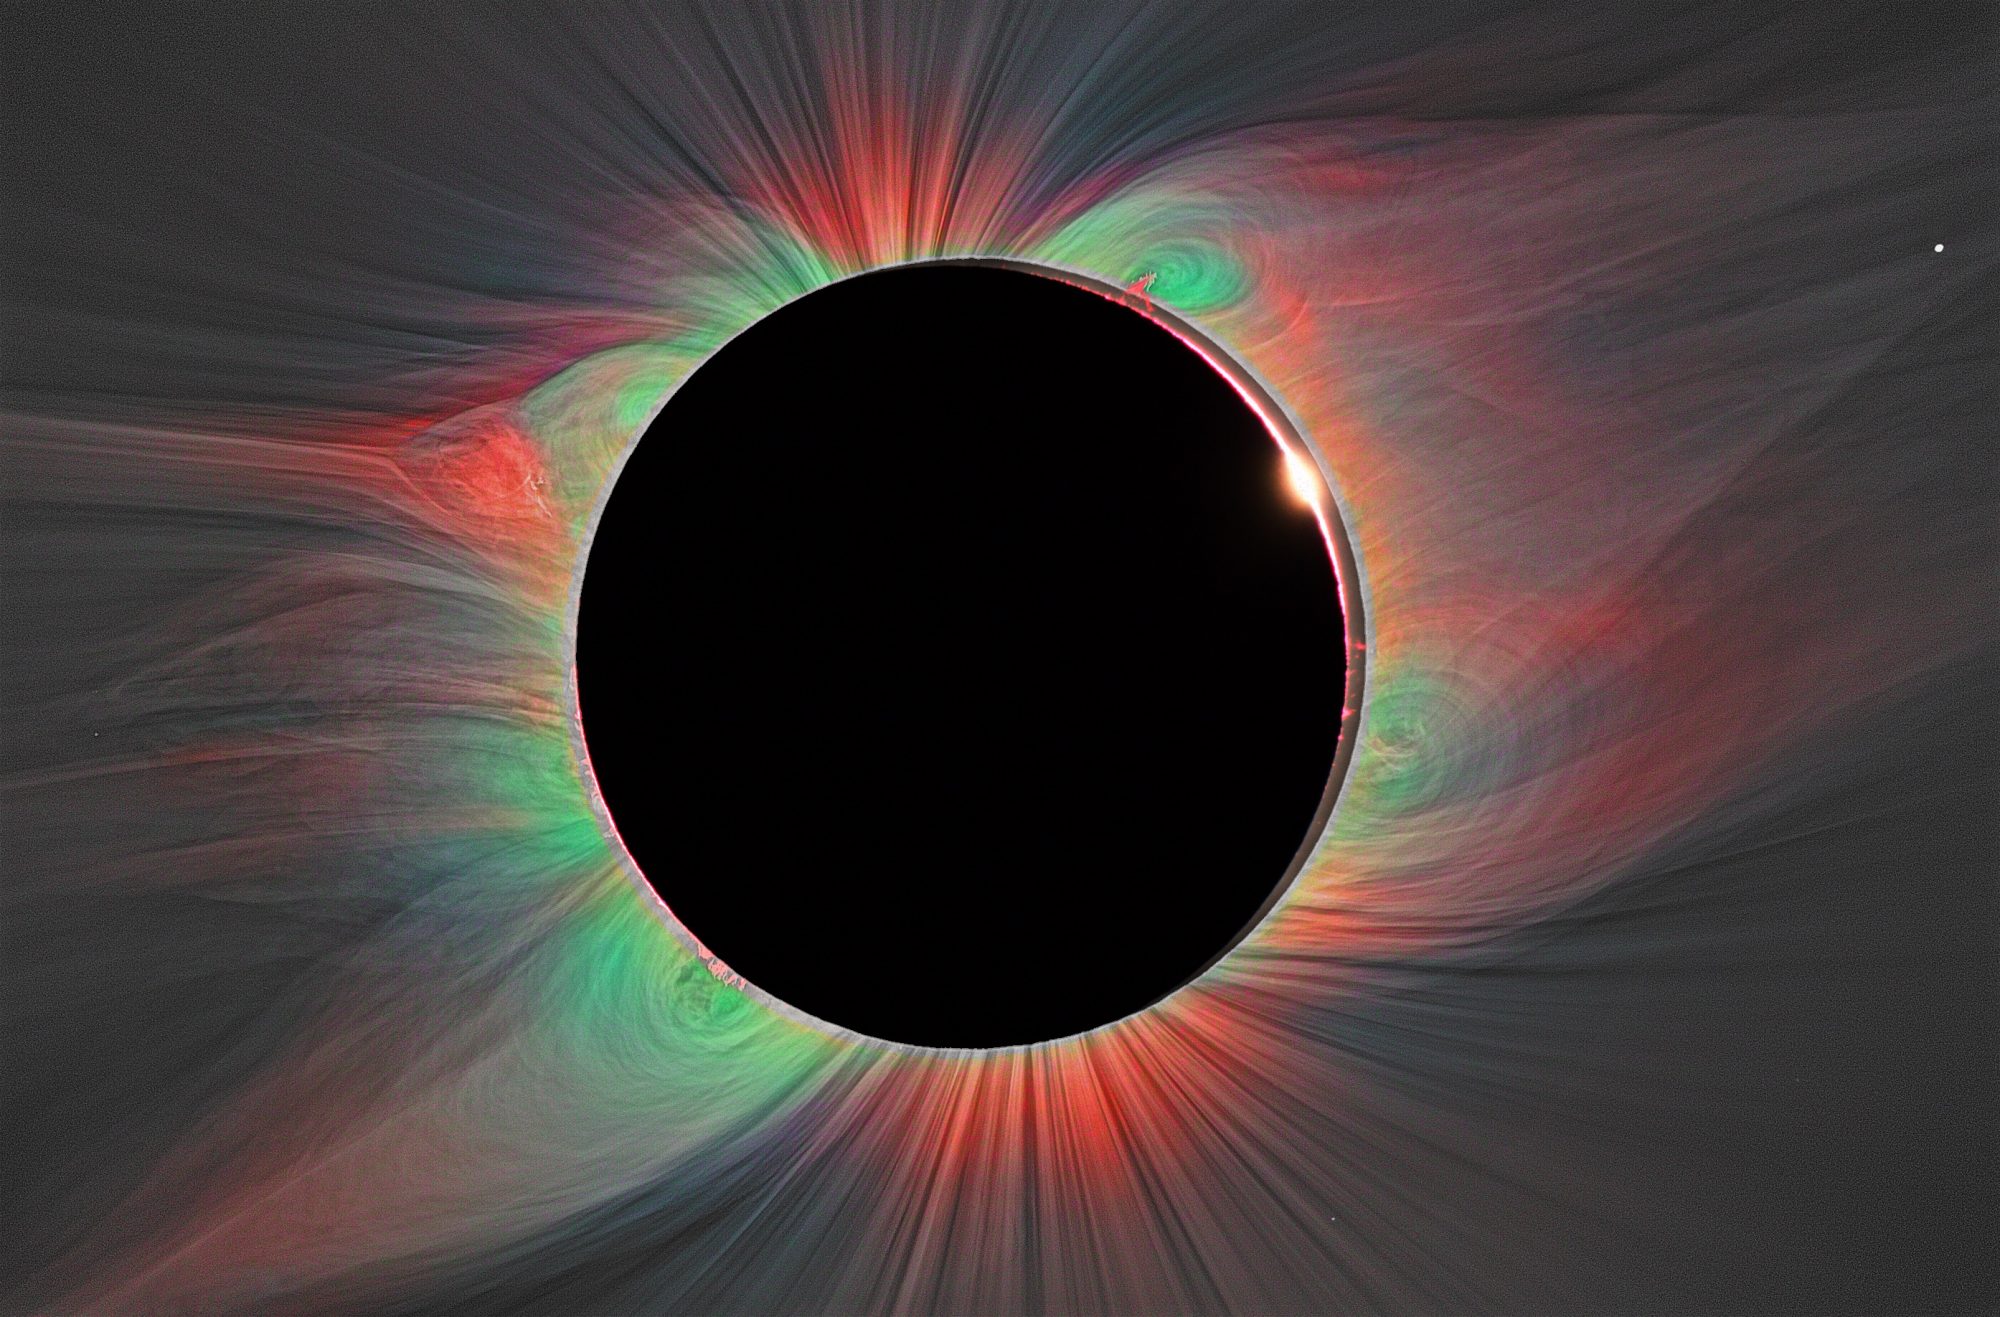 sizzling solar corona